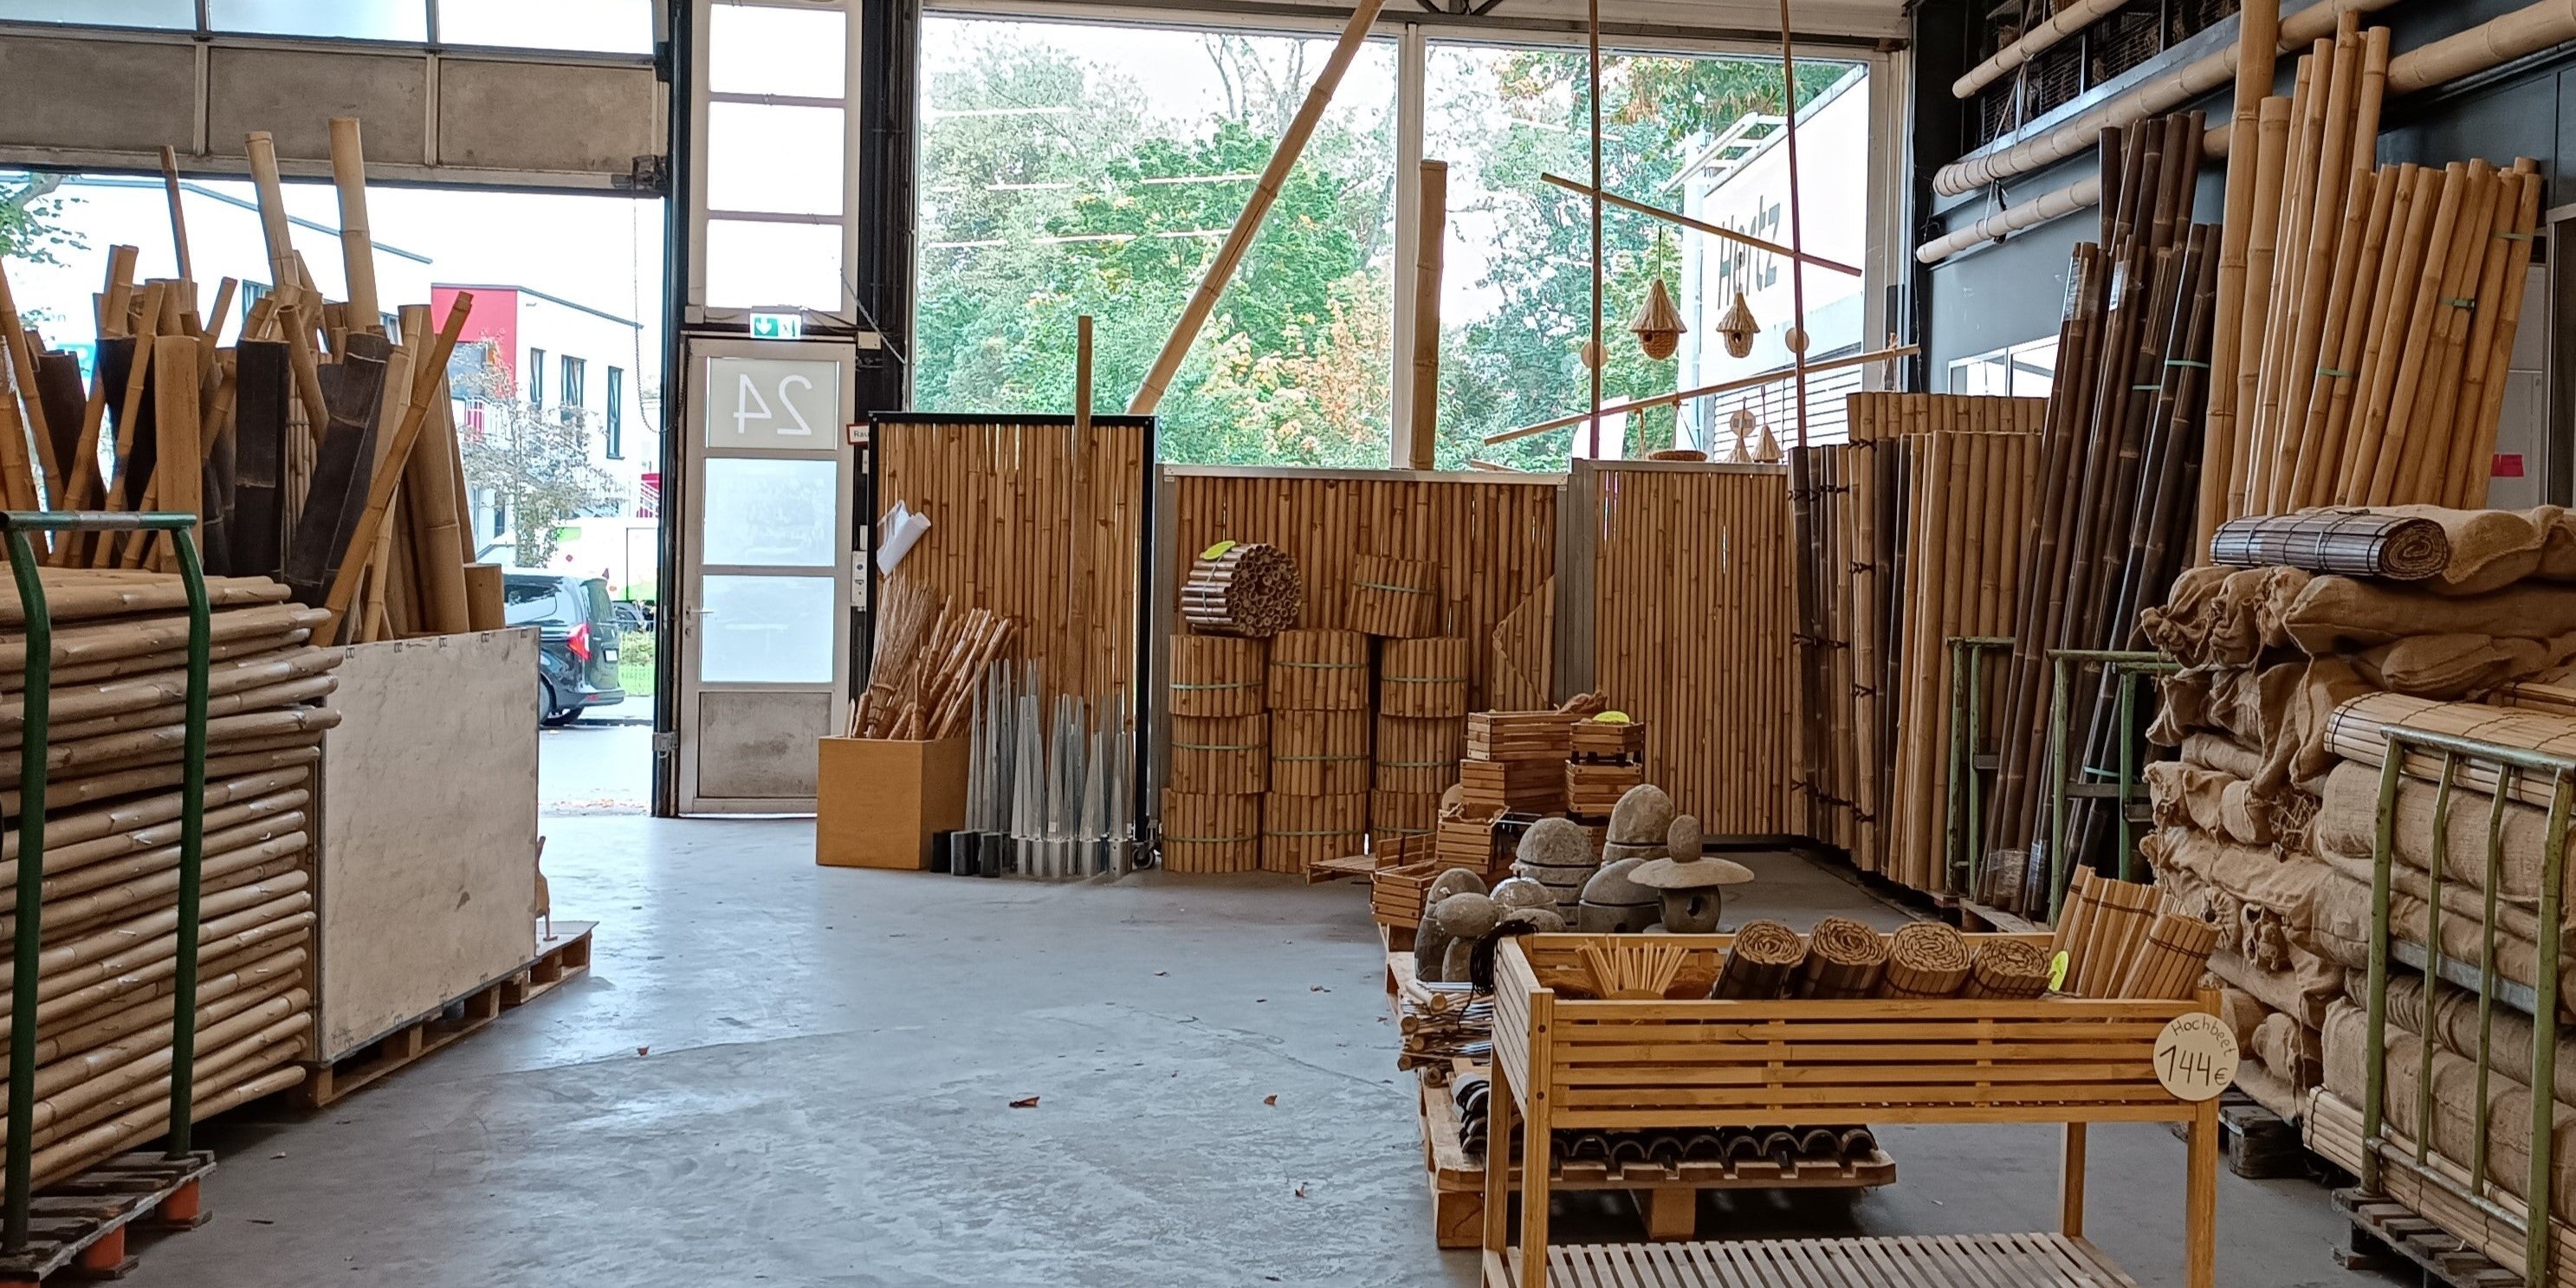 Angebot im Lagerverkauf bei Bambusbasis in Köln